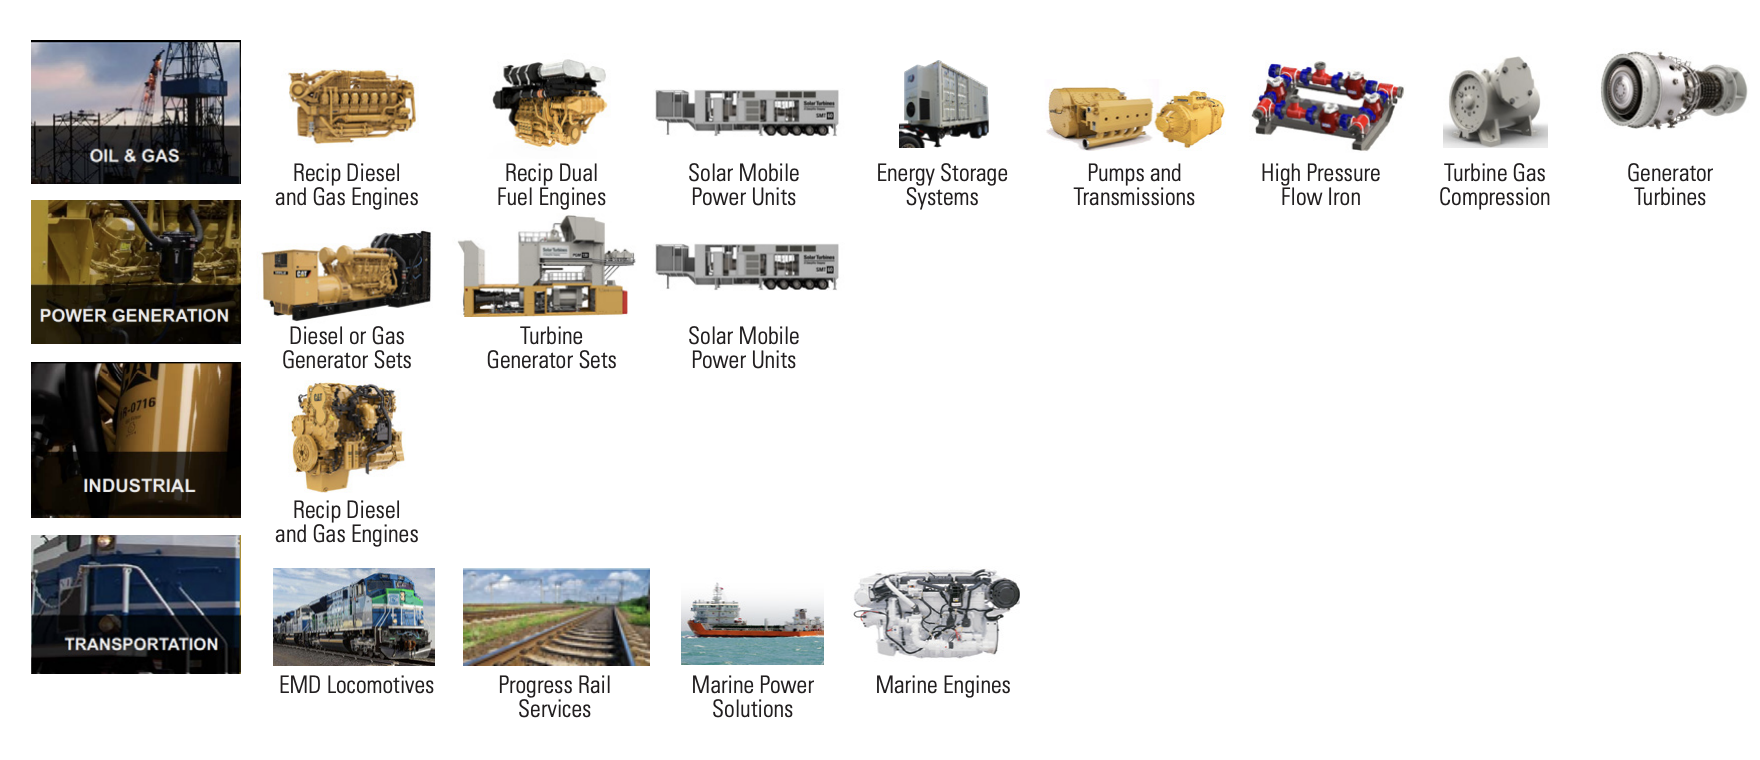 Модельный ряд сегмента оборудования для энергетической и транспортной отраслей. Источник: годовой отчет Caterpillar, стр. 14